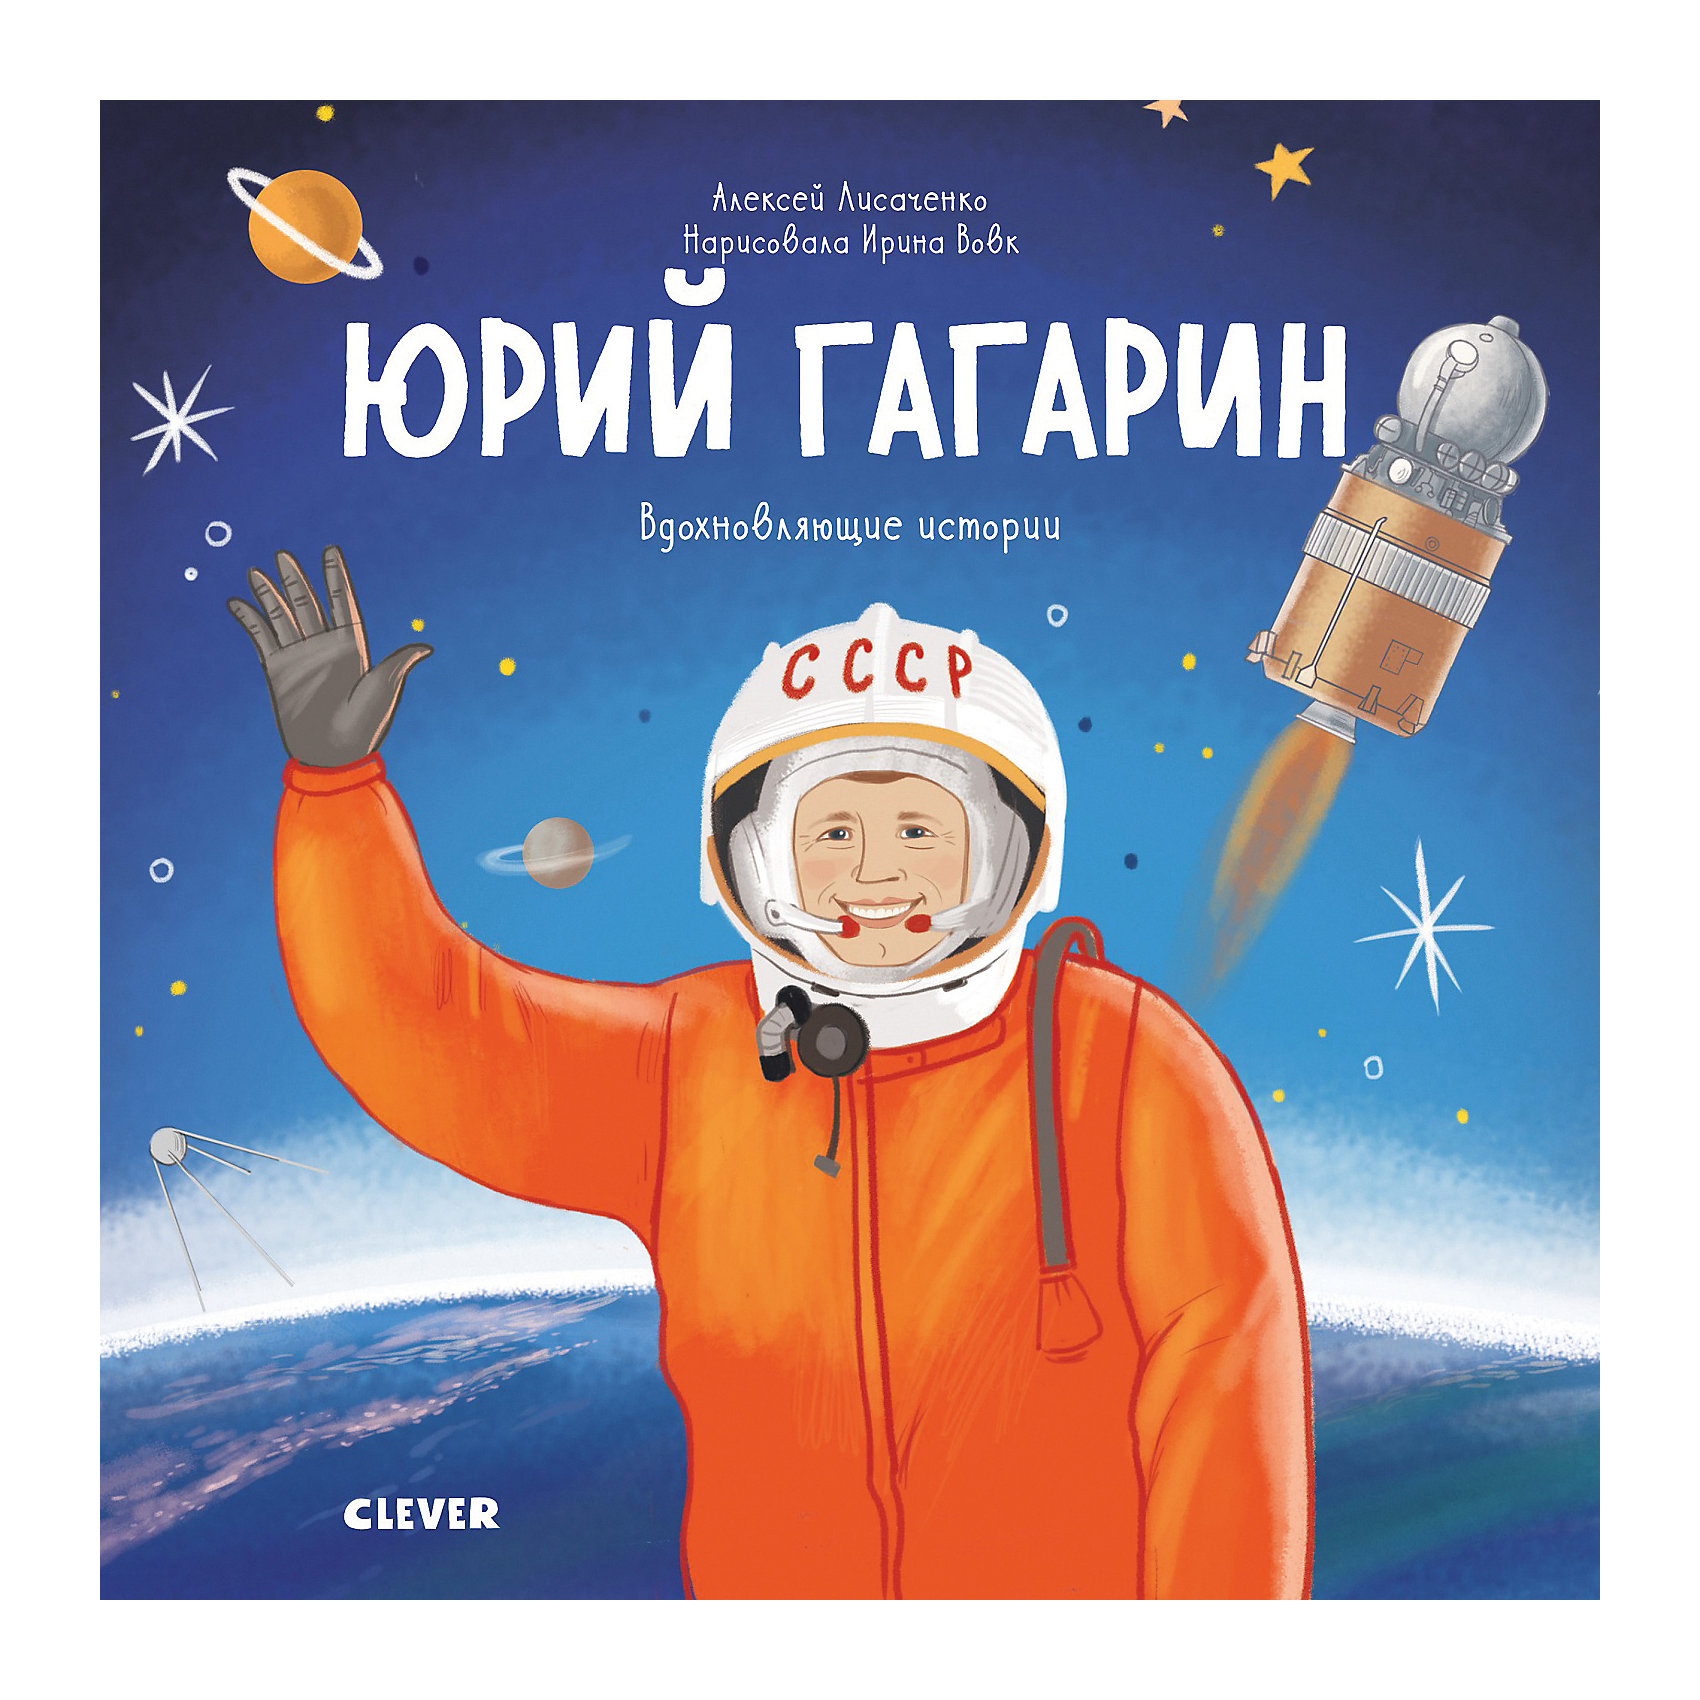 Рассказы о гагарине для детей. Книги о Гагарине для детей. Книга Юрия Гагарина. Космонавт для детей.